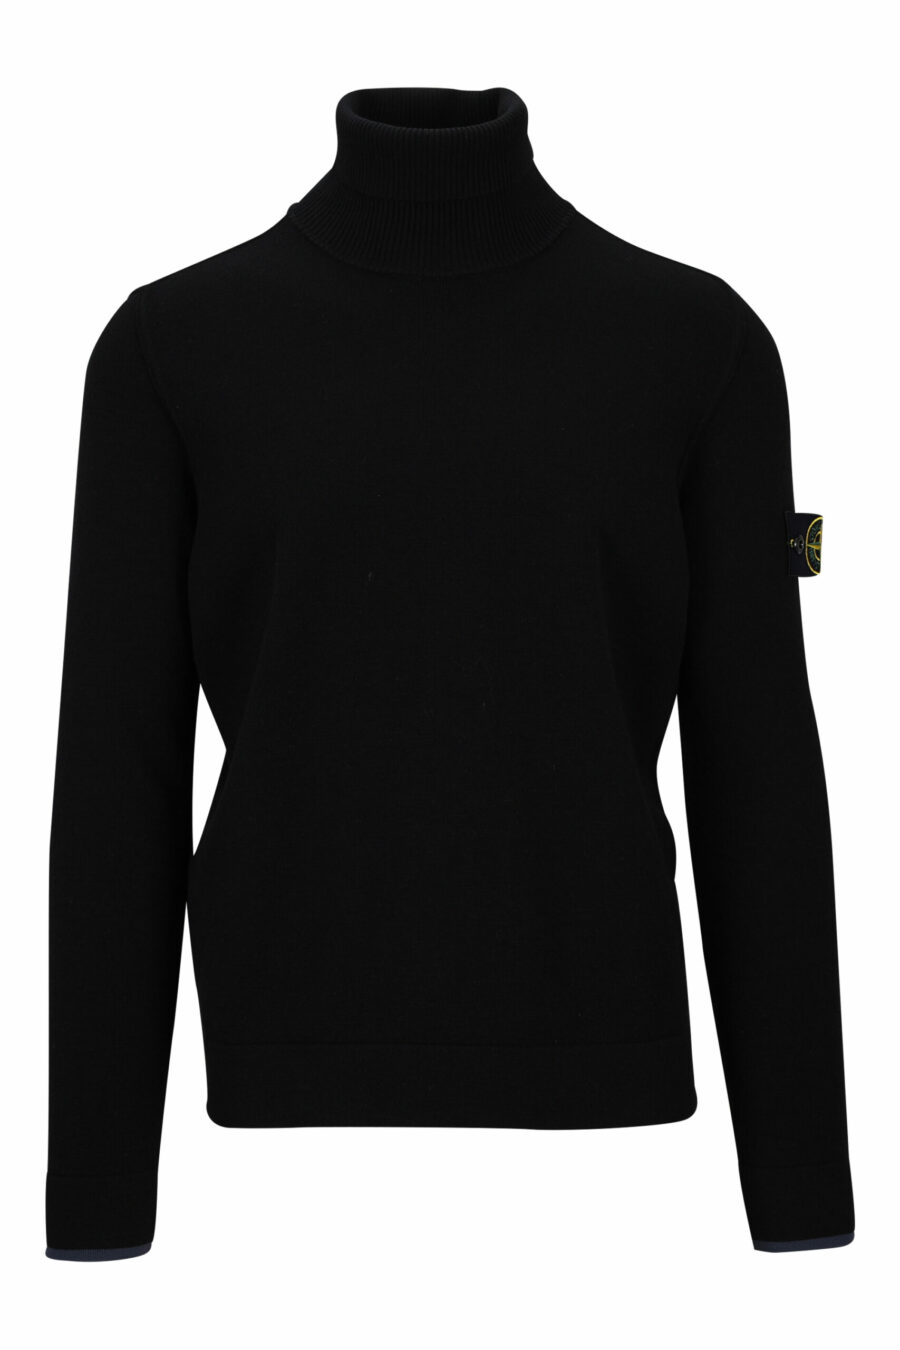 Camisola preta com gola alta e emblema com logótipo lateral - 8052572741814 scaled